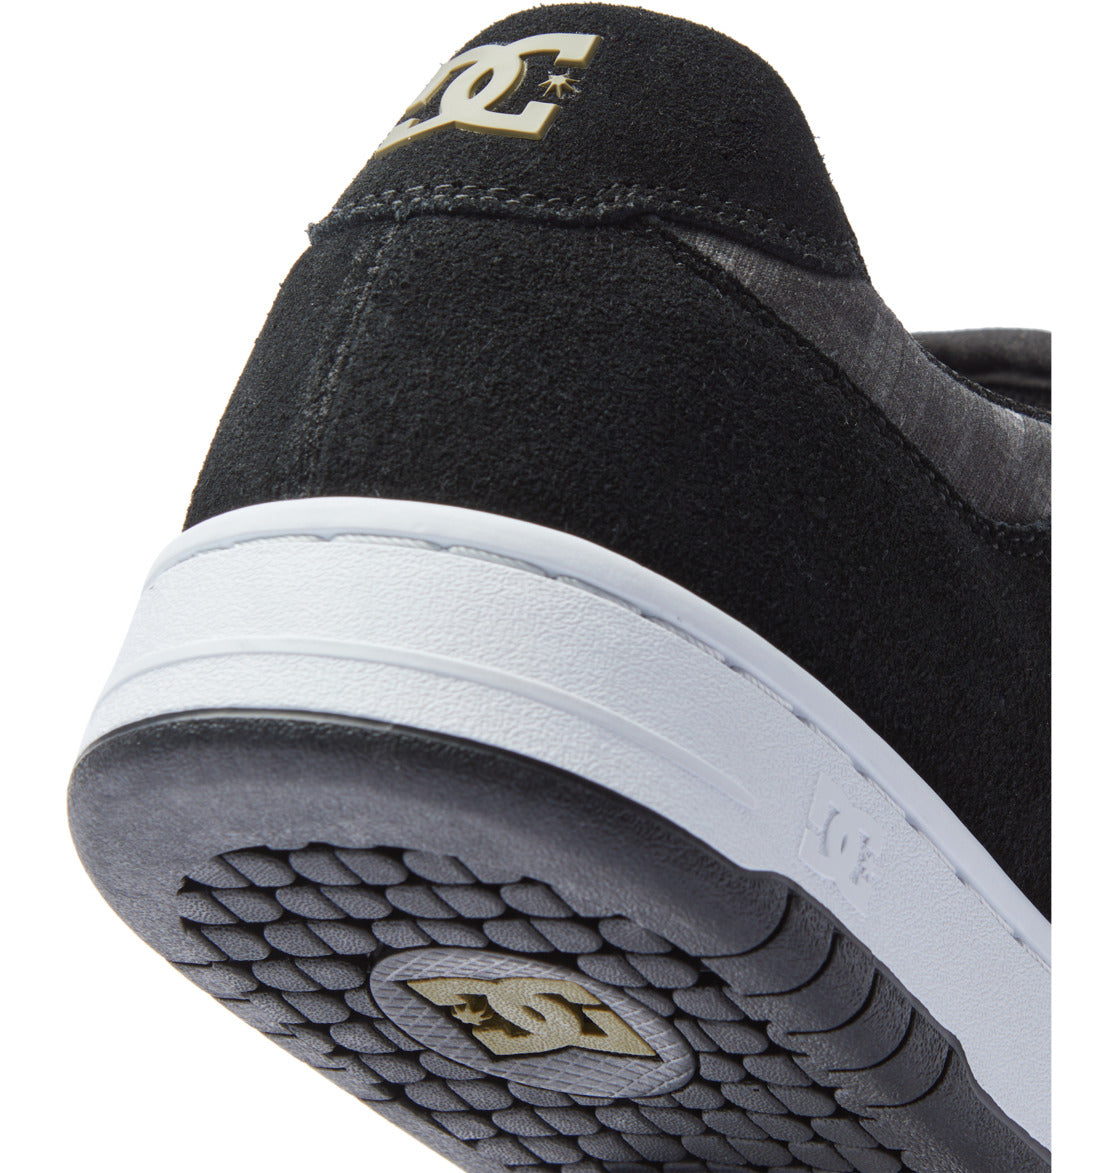 Dc Shoes Manteca 4 Skateschuh – Schwarz/Camouflage | Meistverkaufte Produkte | Neue Produkte | Neueste Produkte | surfdevils.com